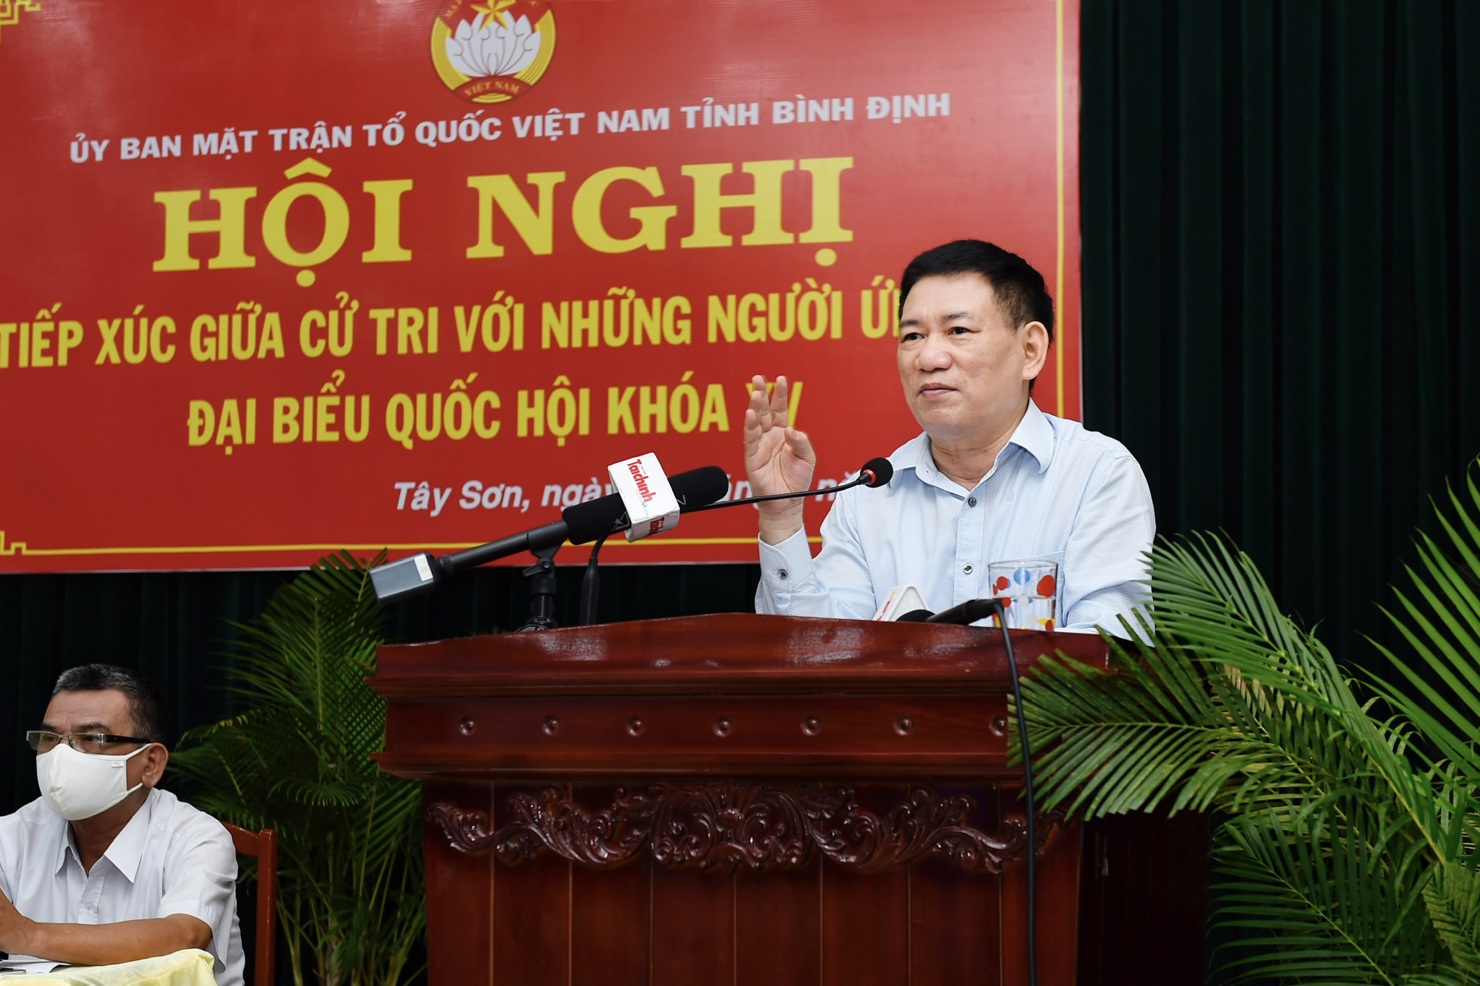 Bộ trưởng Hồ Đức Phớc trình bày chương trình hành động của mình tại cuộc tiếp xúc cử tri tại Thị trấn Phú Phong, huyện Tây Sơn, tỉnh Bình Định. Ảnh: Minh Tuấn